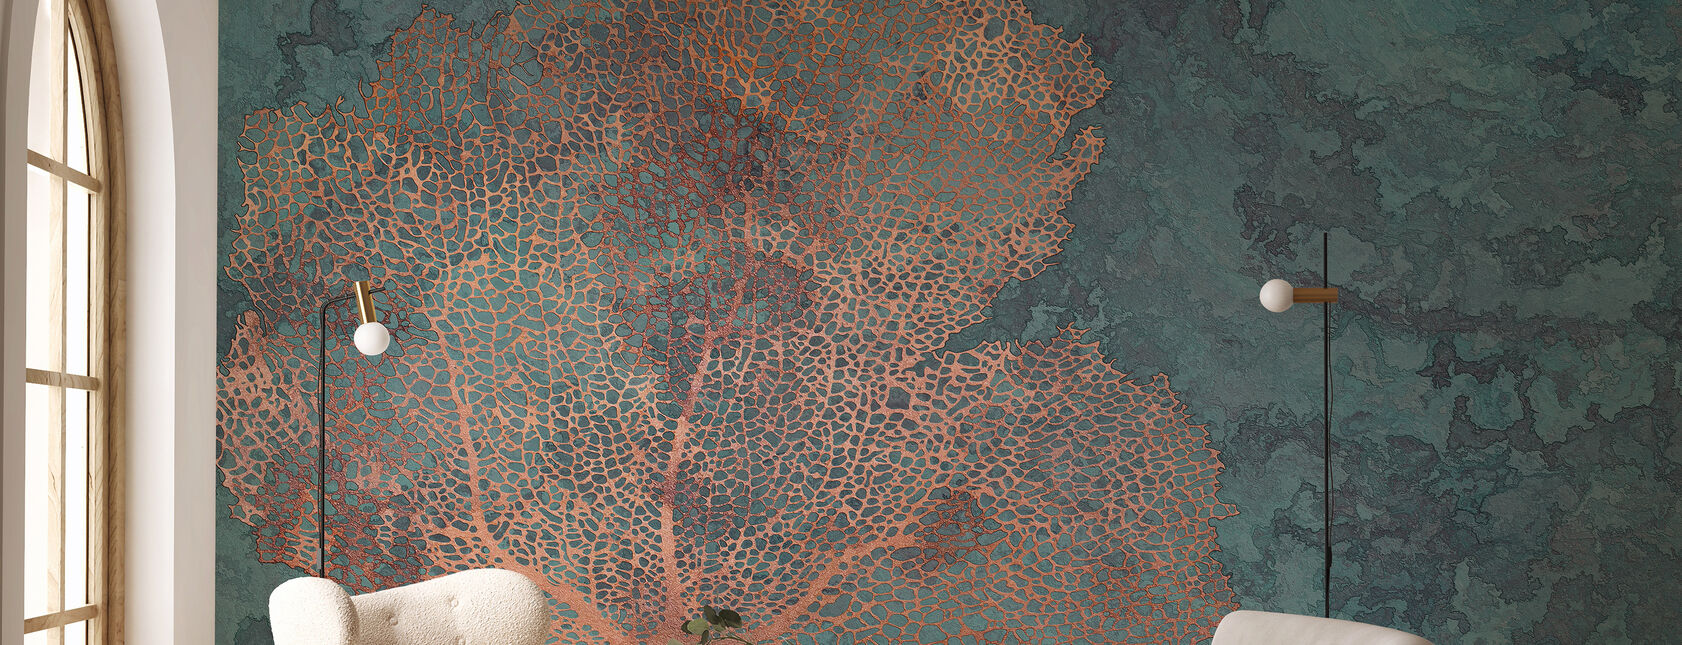 Coral de cobre - Papel de parede